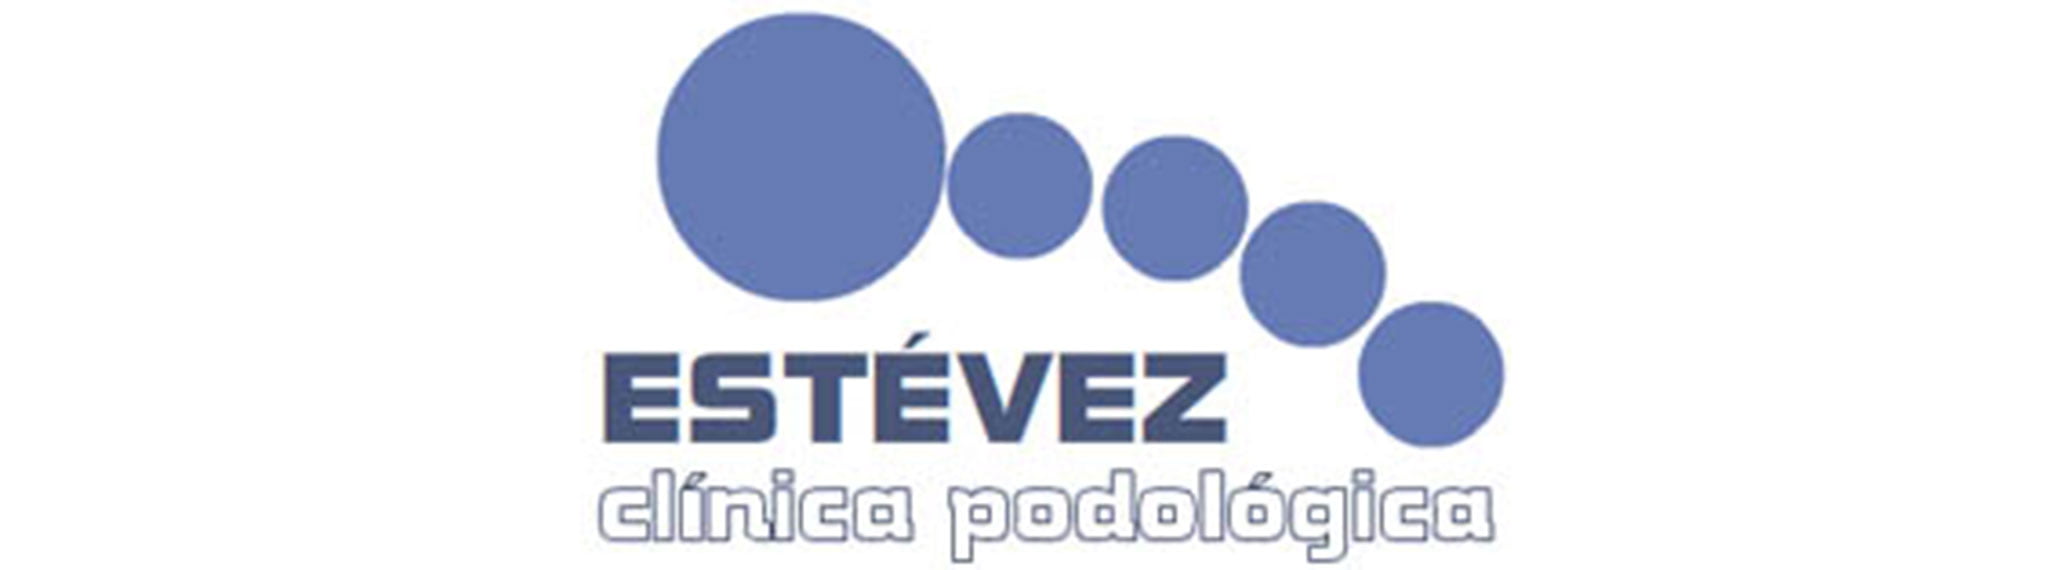 Logotipo Clínica Podológica Estévez